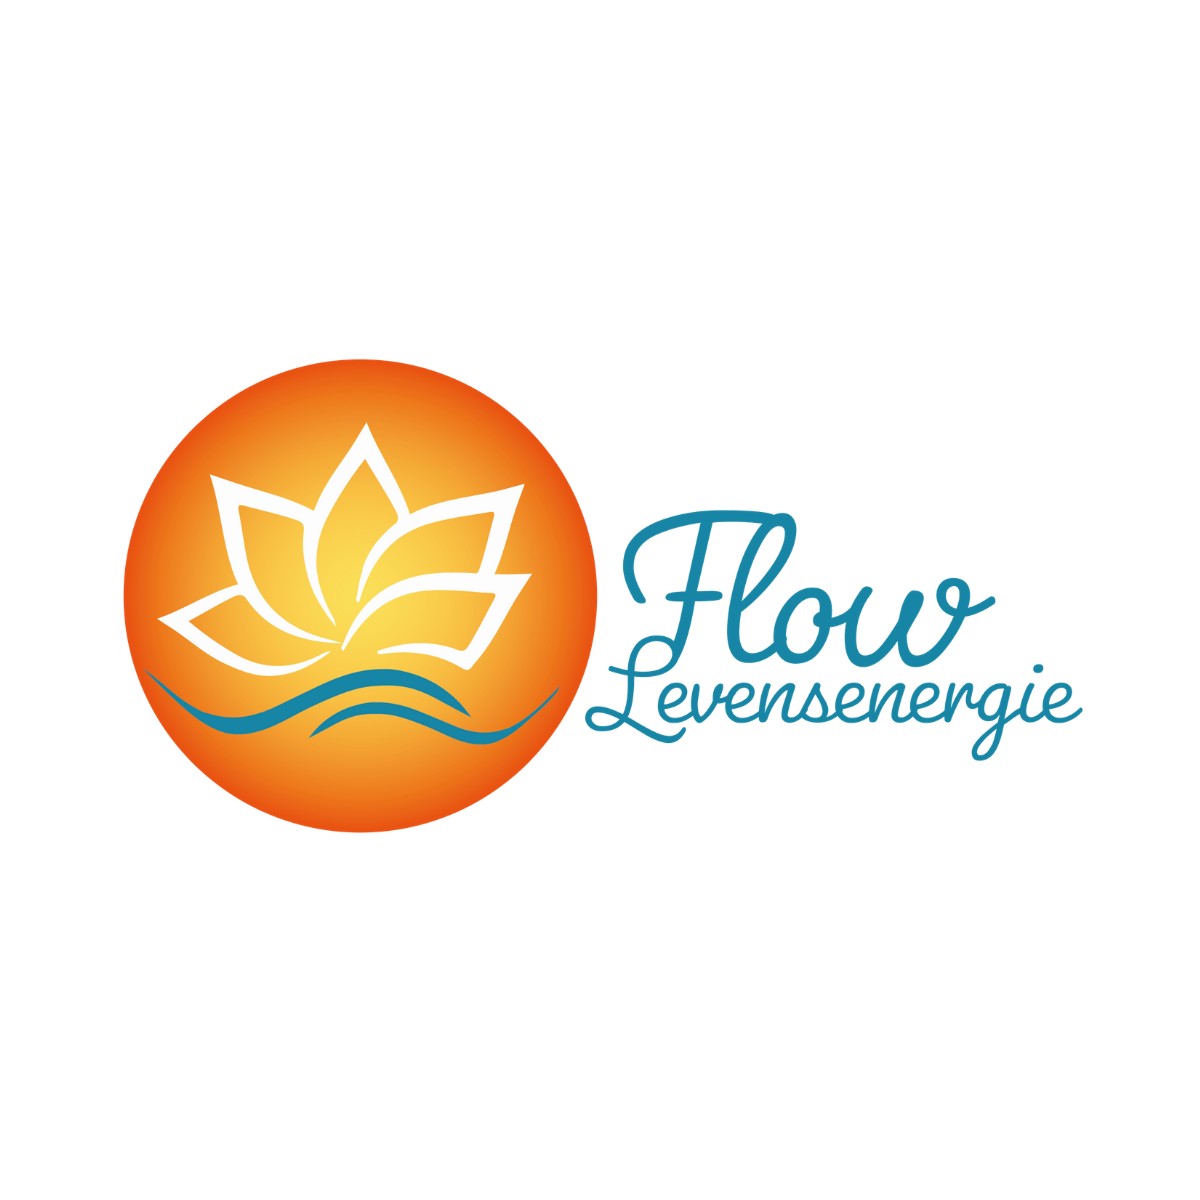 Logo ontwerp in opdracht van Flow Levensenergie